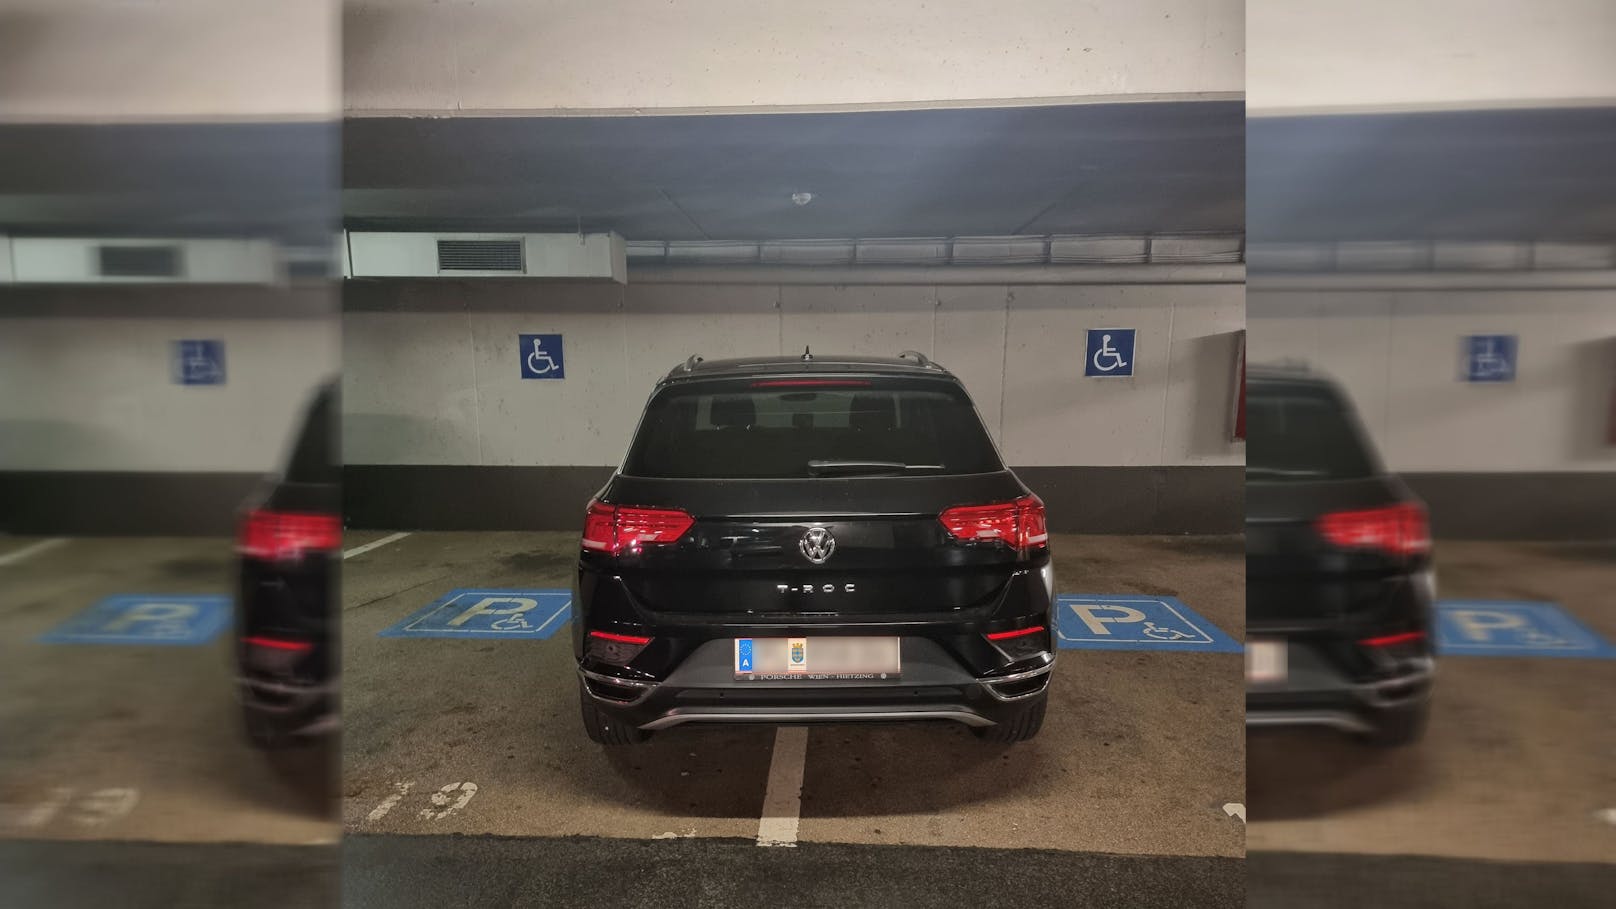 Dieser VW parkte an einer ziemlich ungünstigen Stelle.